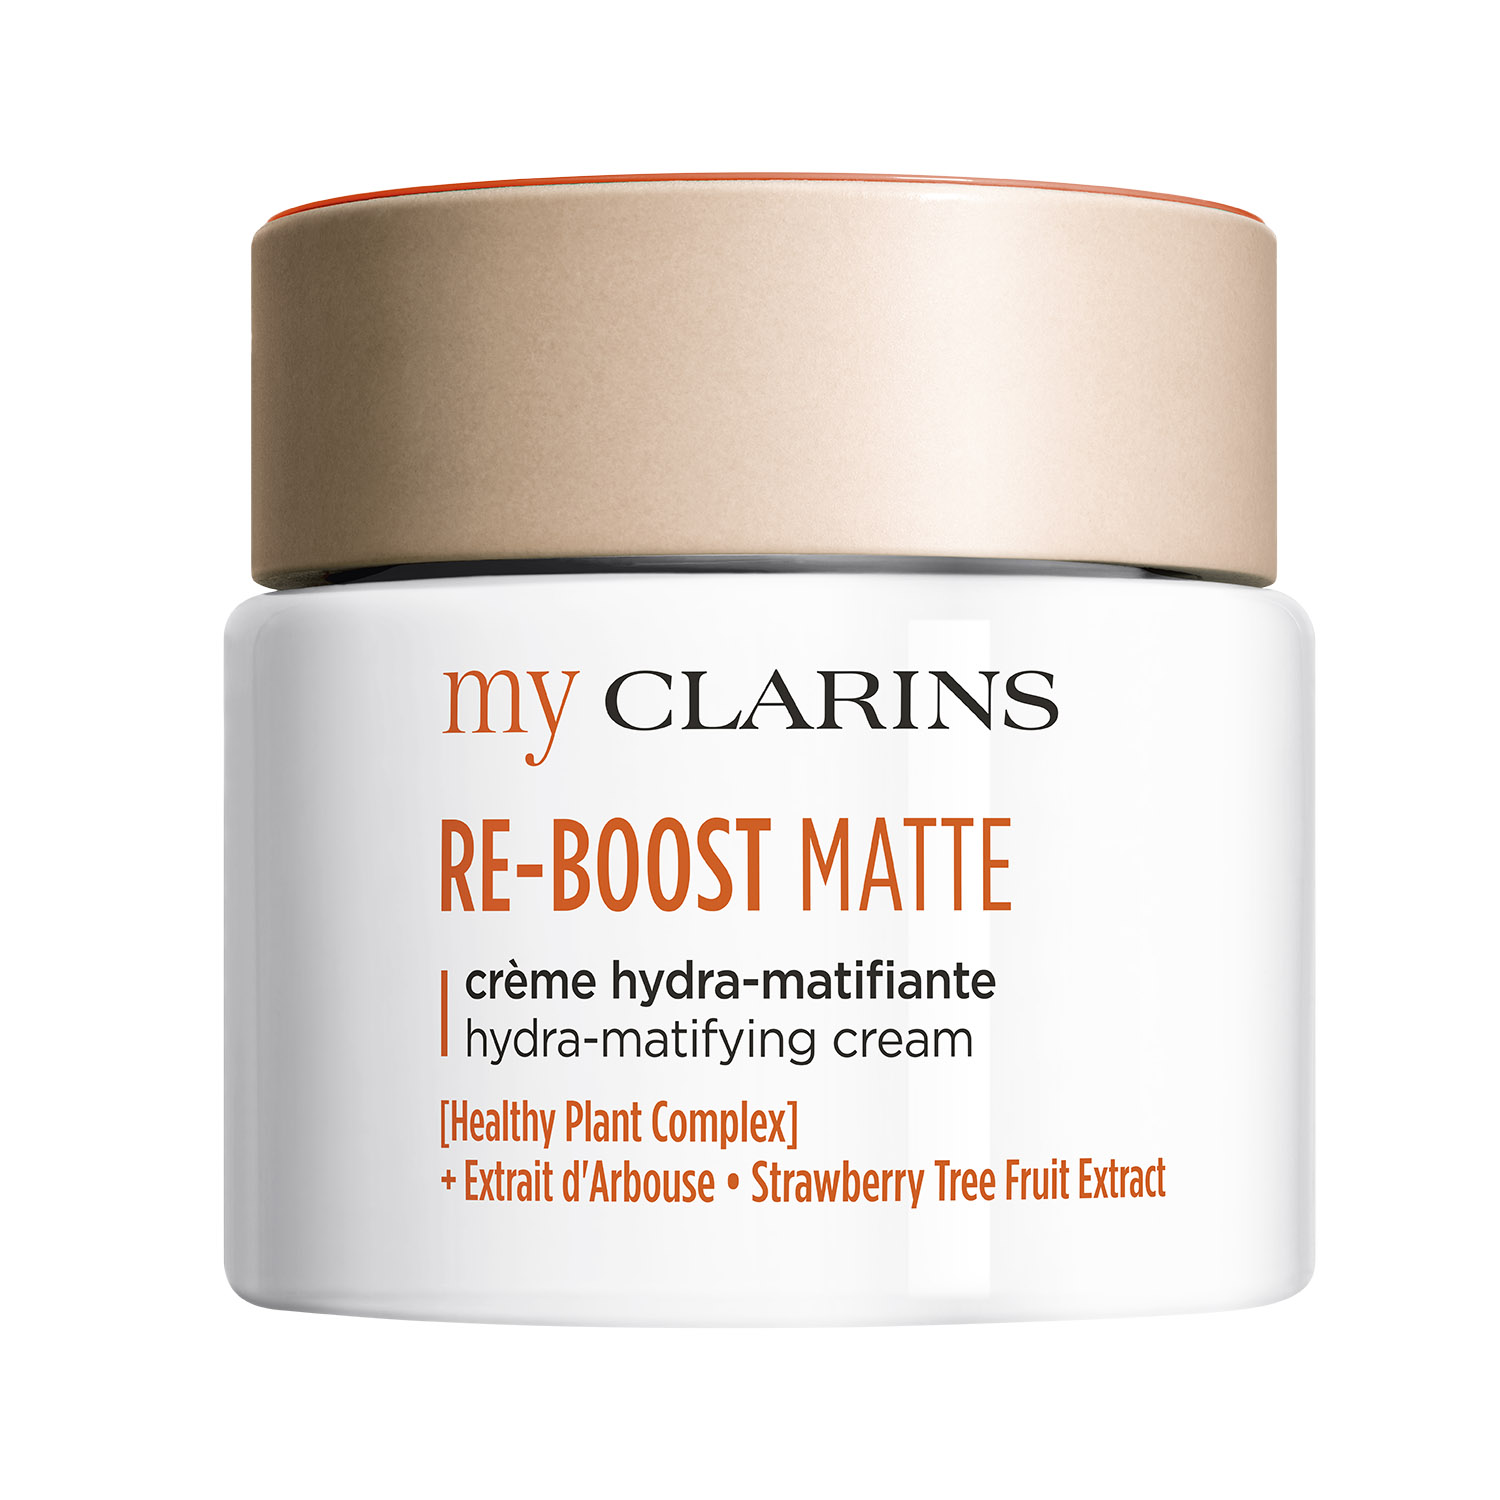 my clarins re-boost matte hydra-matifying (crema hidratante de rostro matificante)